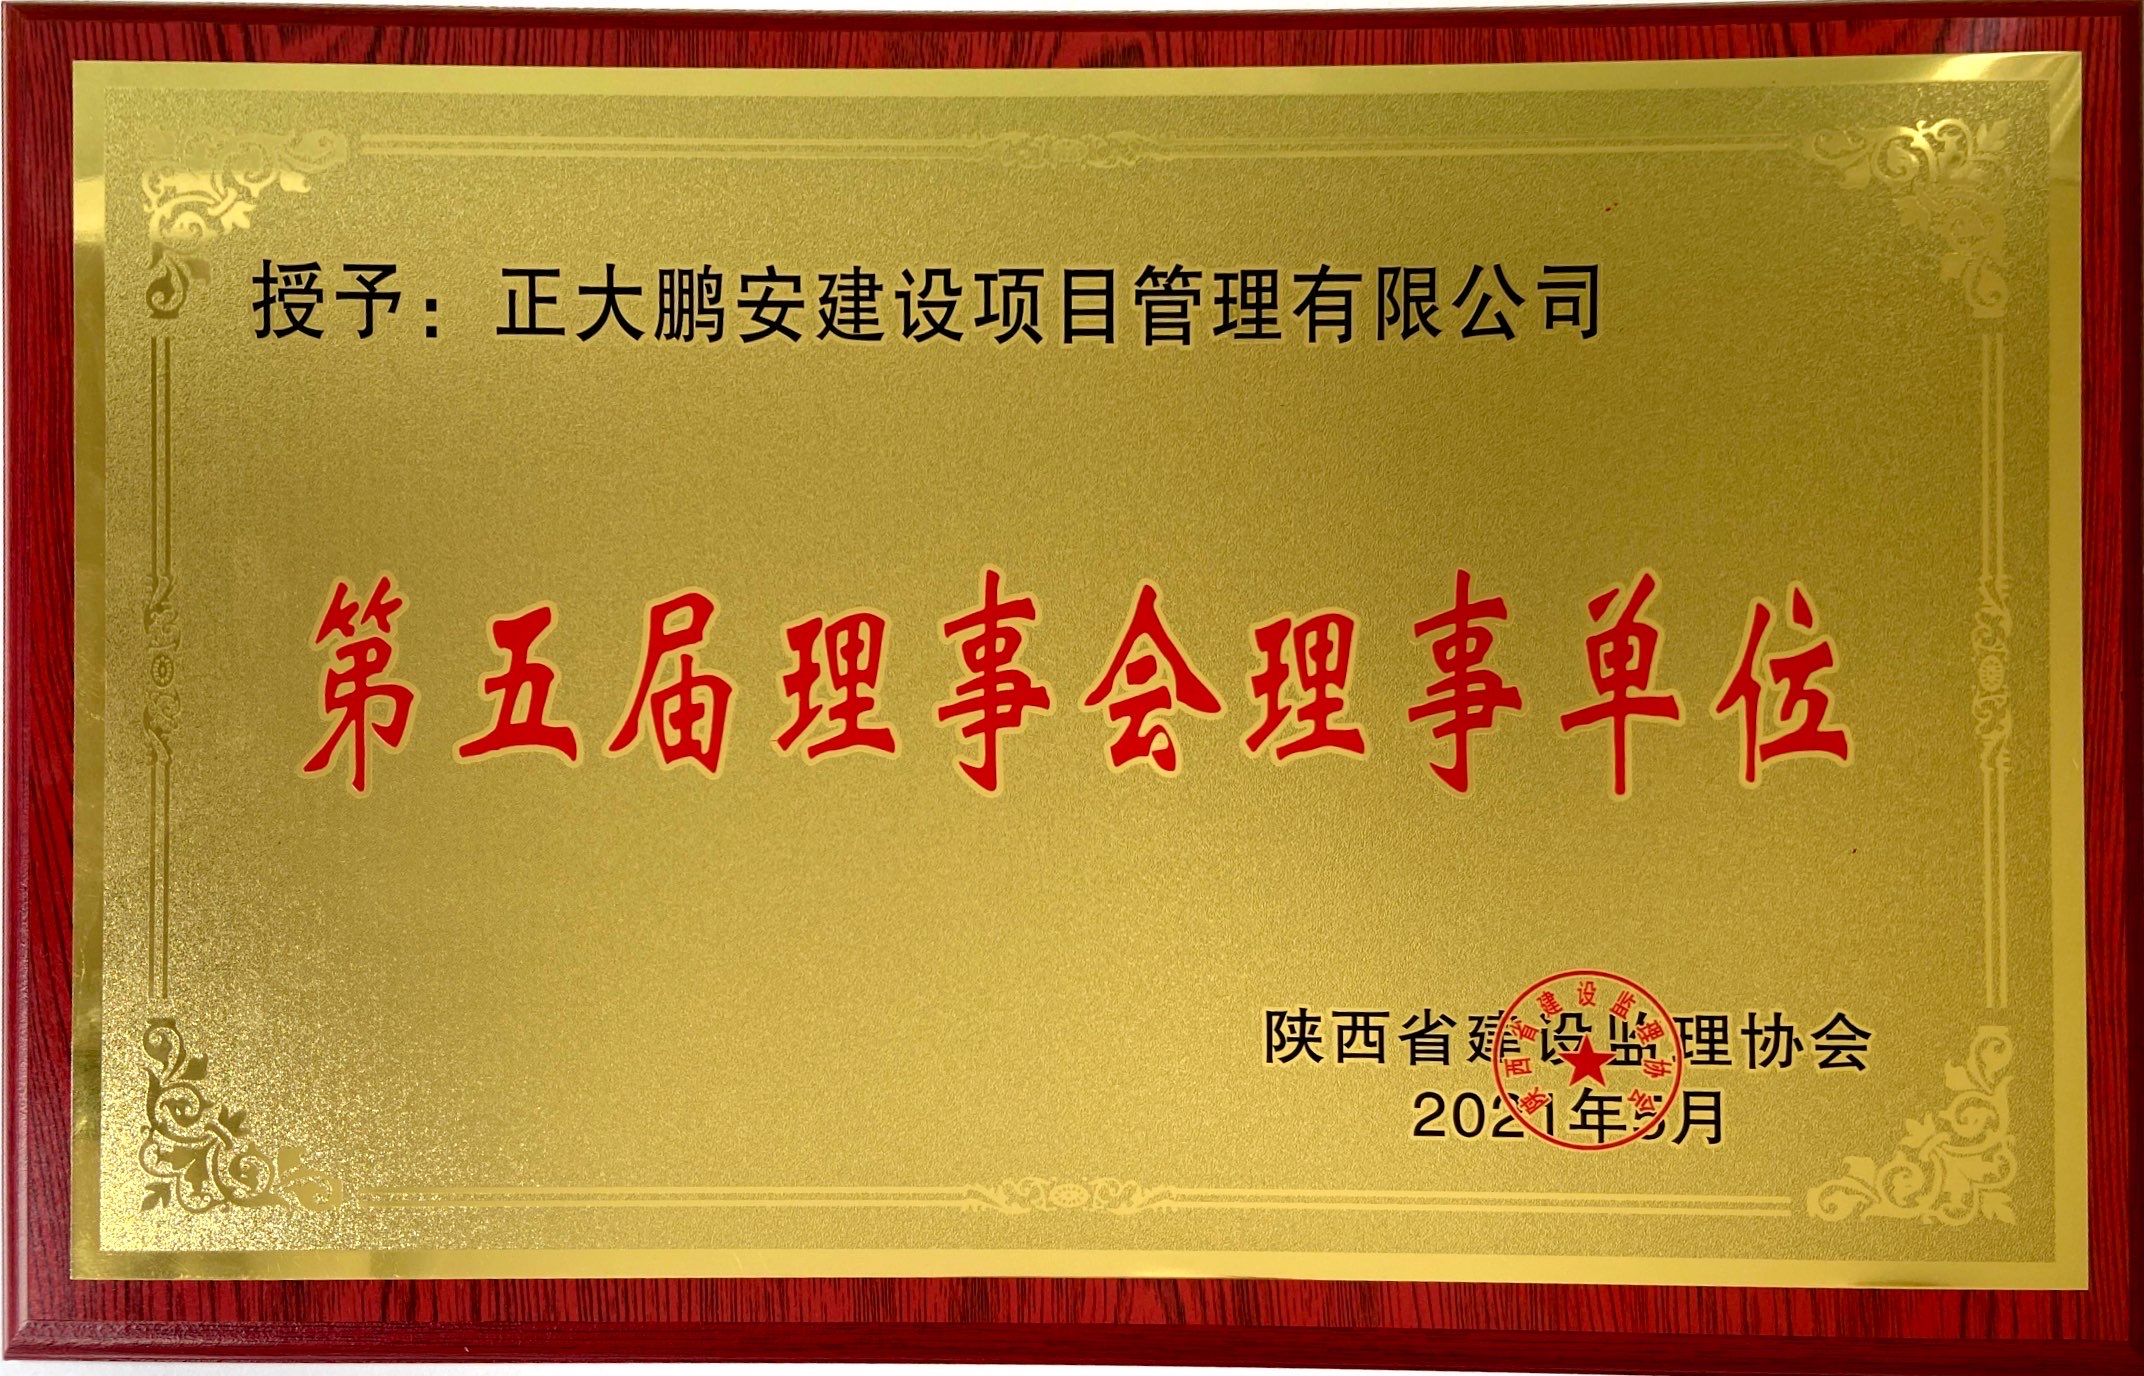 陜西省建設監理協會第五屆理事會理事單位